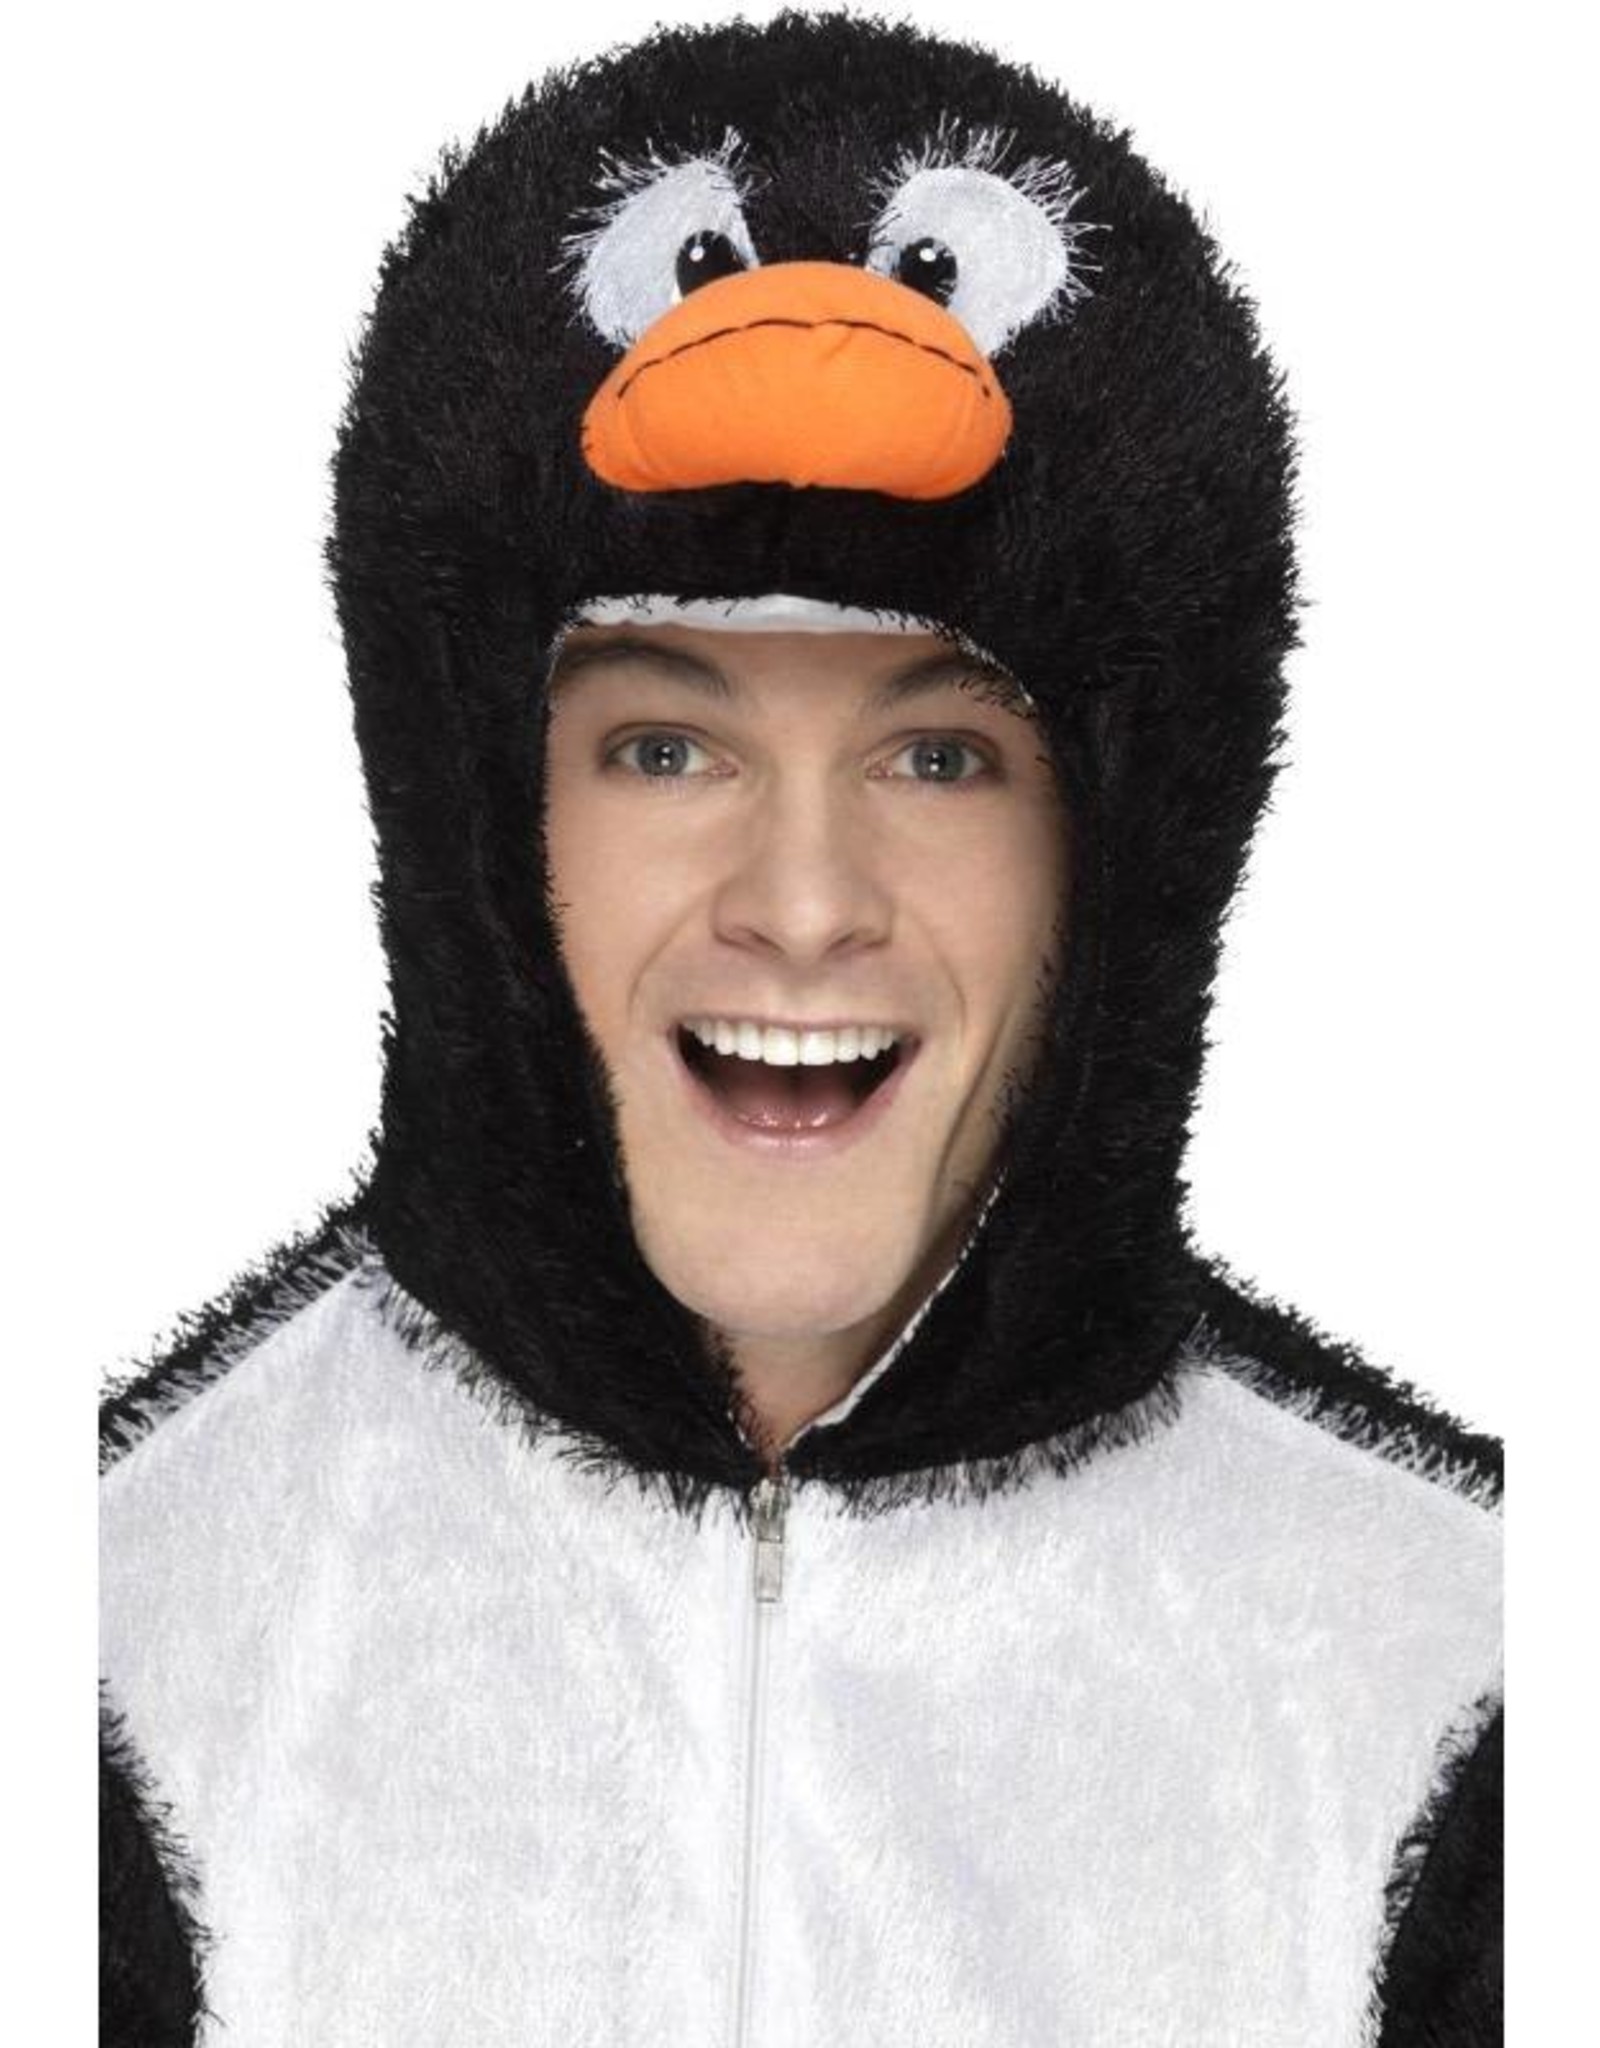 Pinguin kostuum